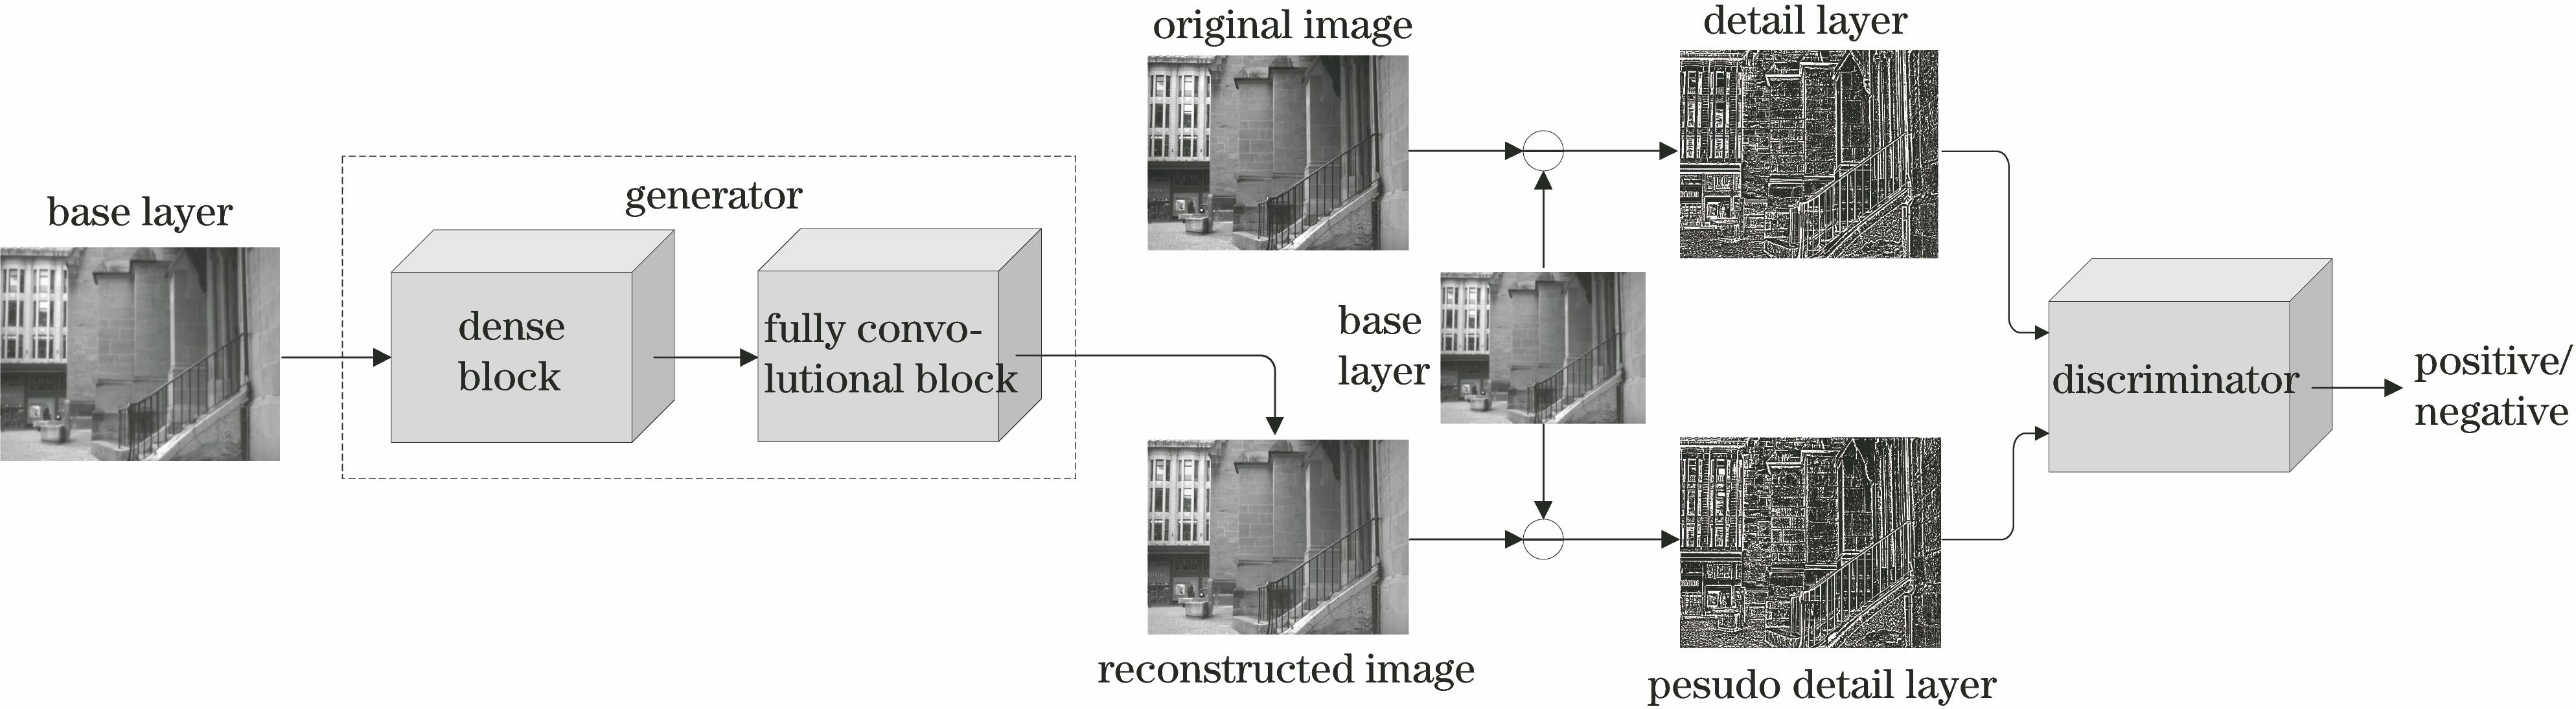 Framework of image reconstruction model